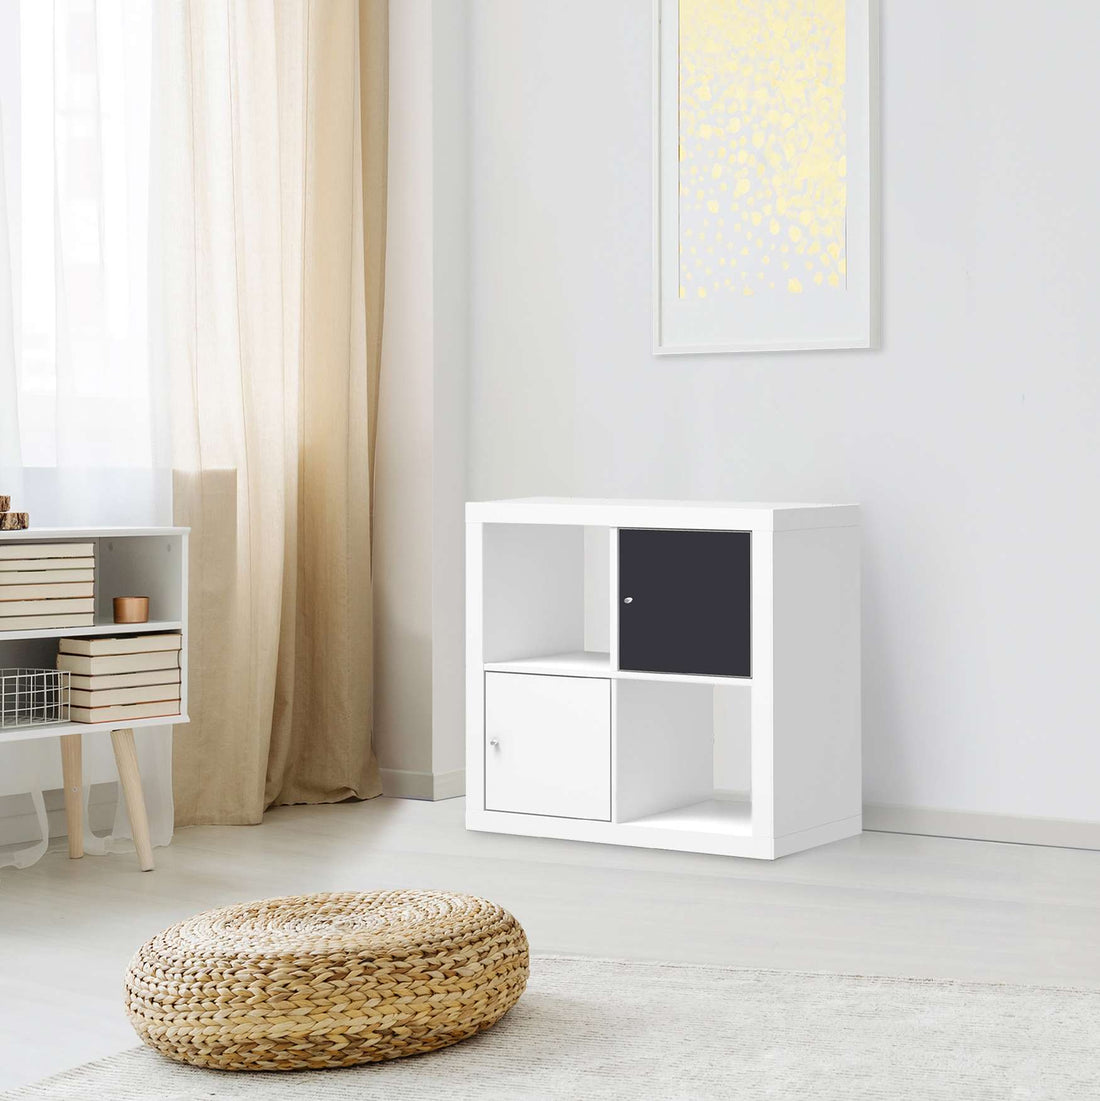 Selbstklebende Folie Grau Dark - IKEA Kallax Regal 1 Türe - Wohnzimmer